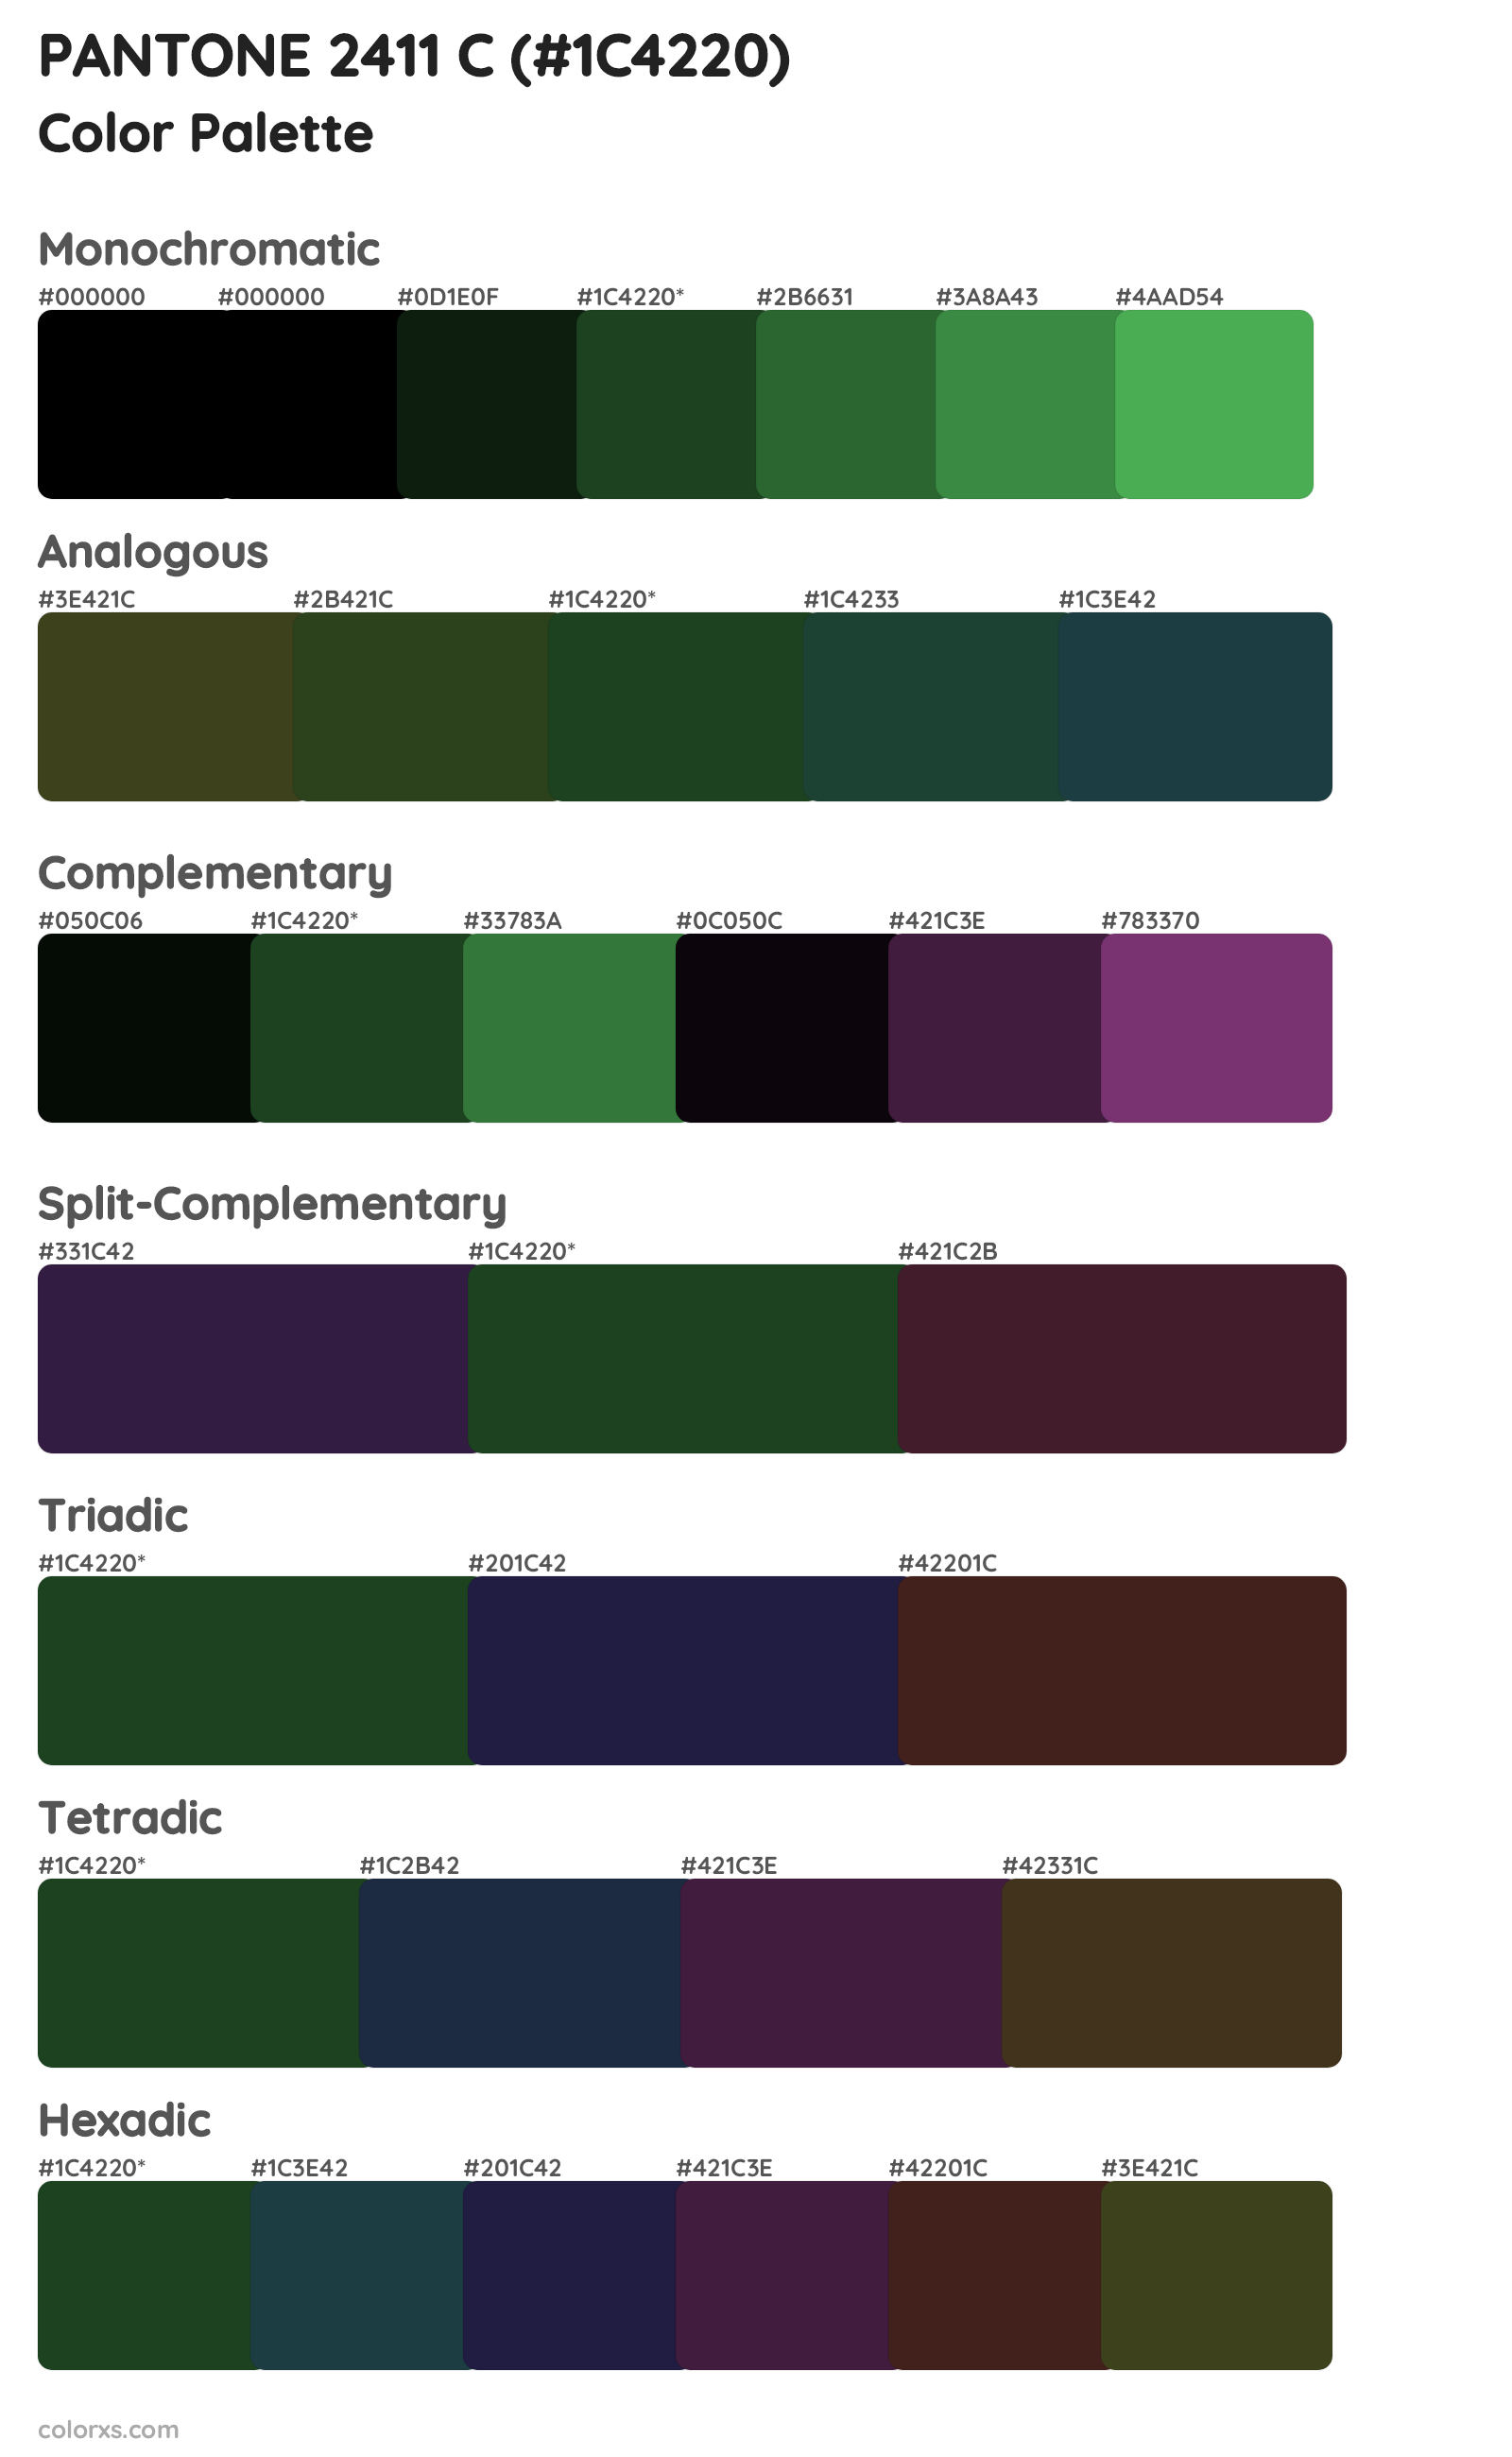 PANTONE 2411 C Color Scheme Palettes